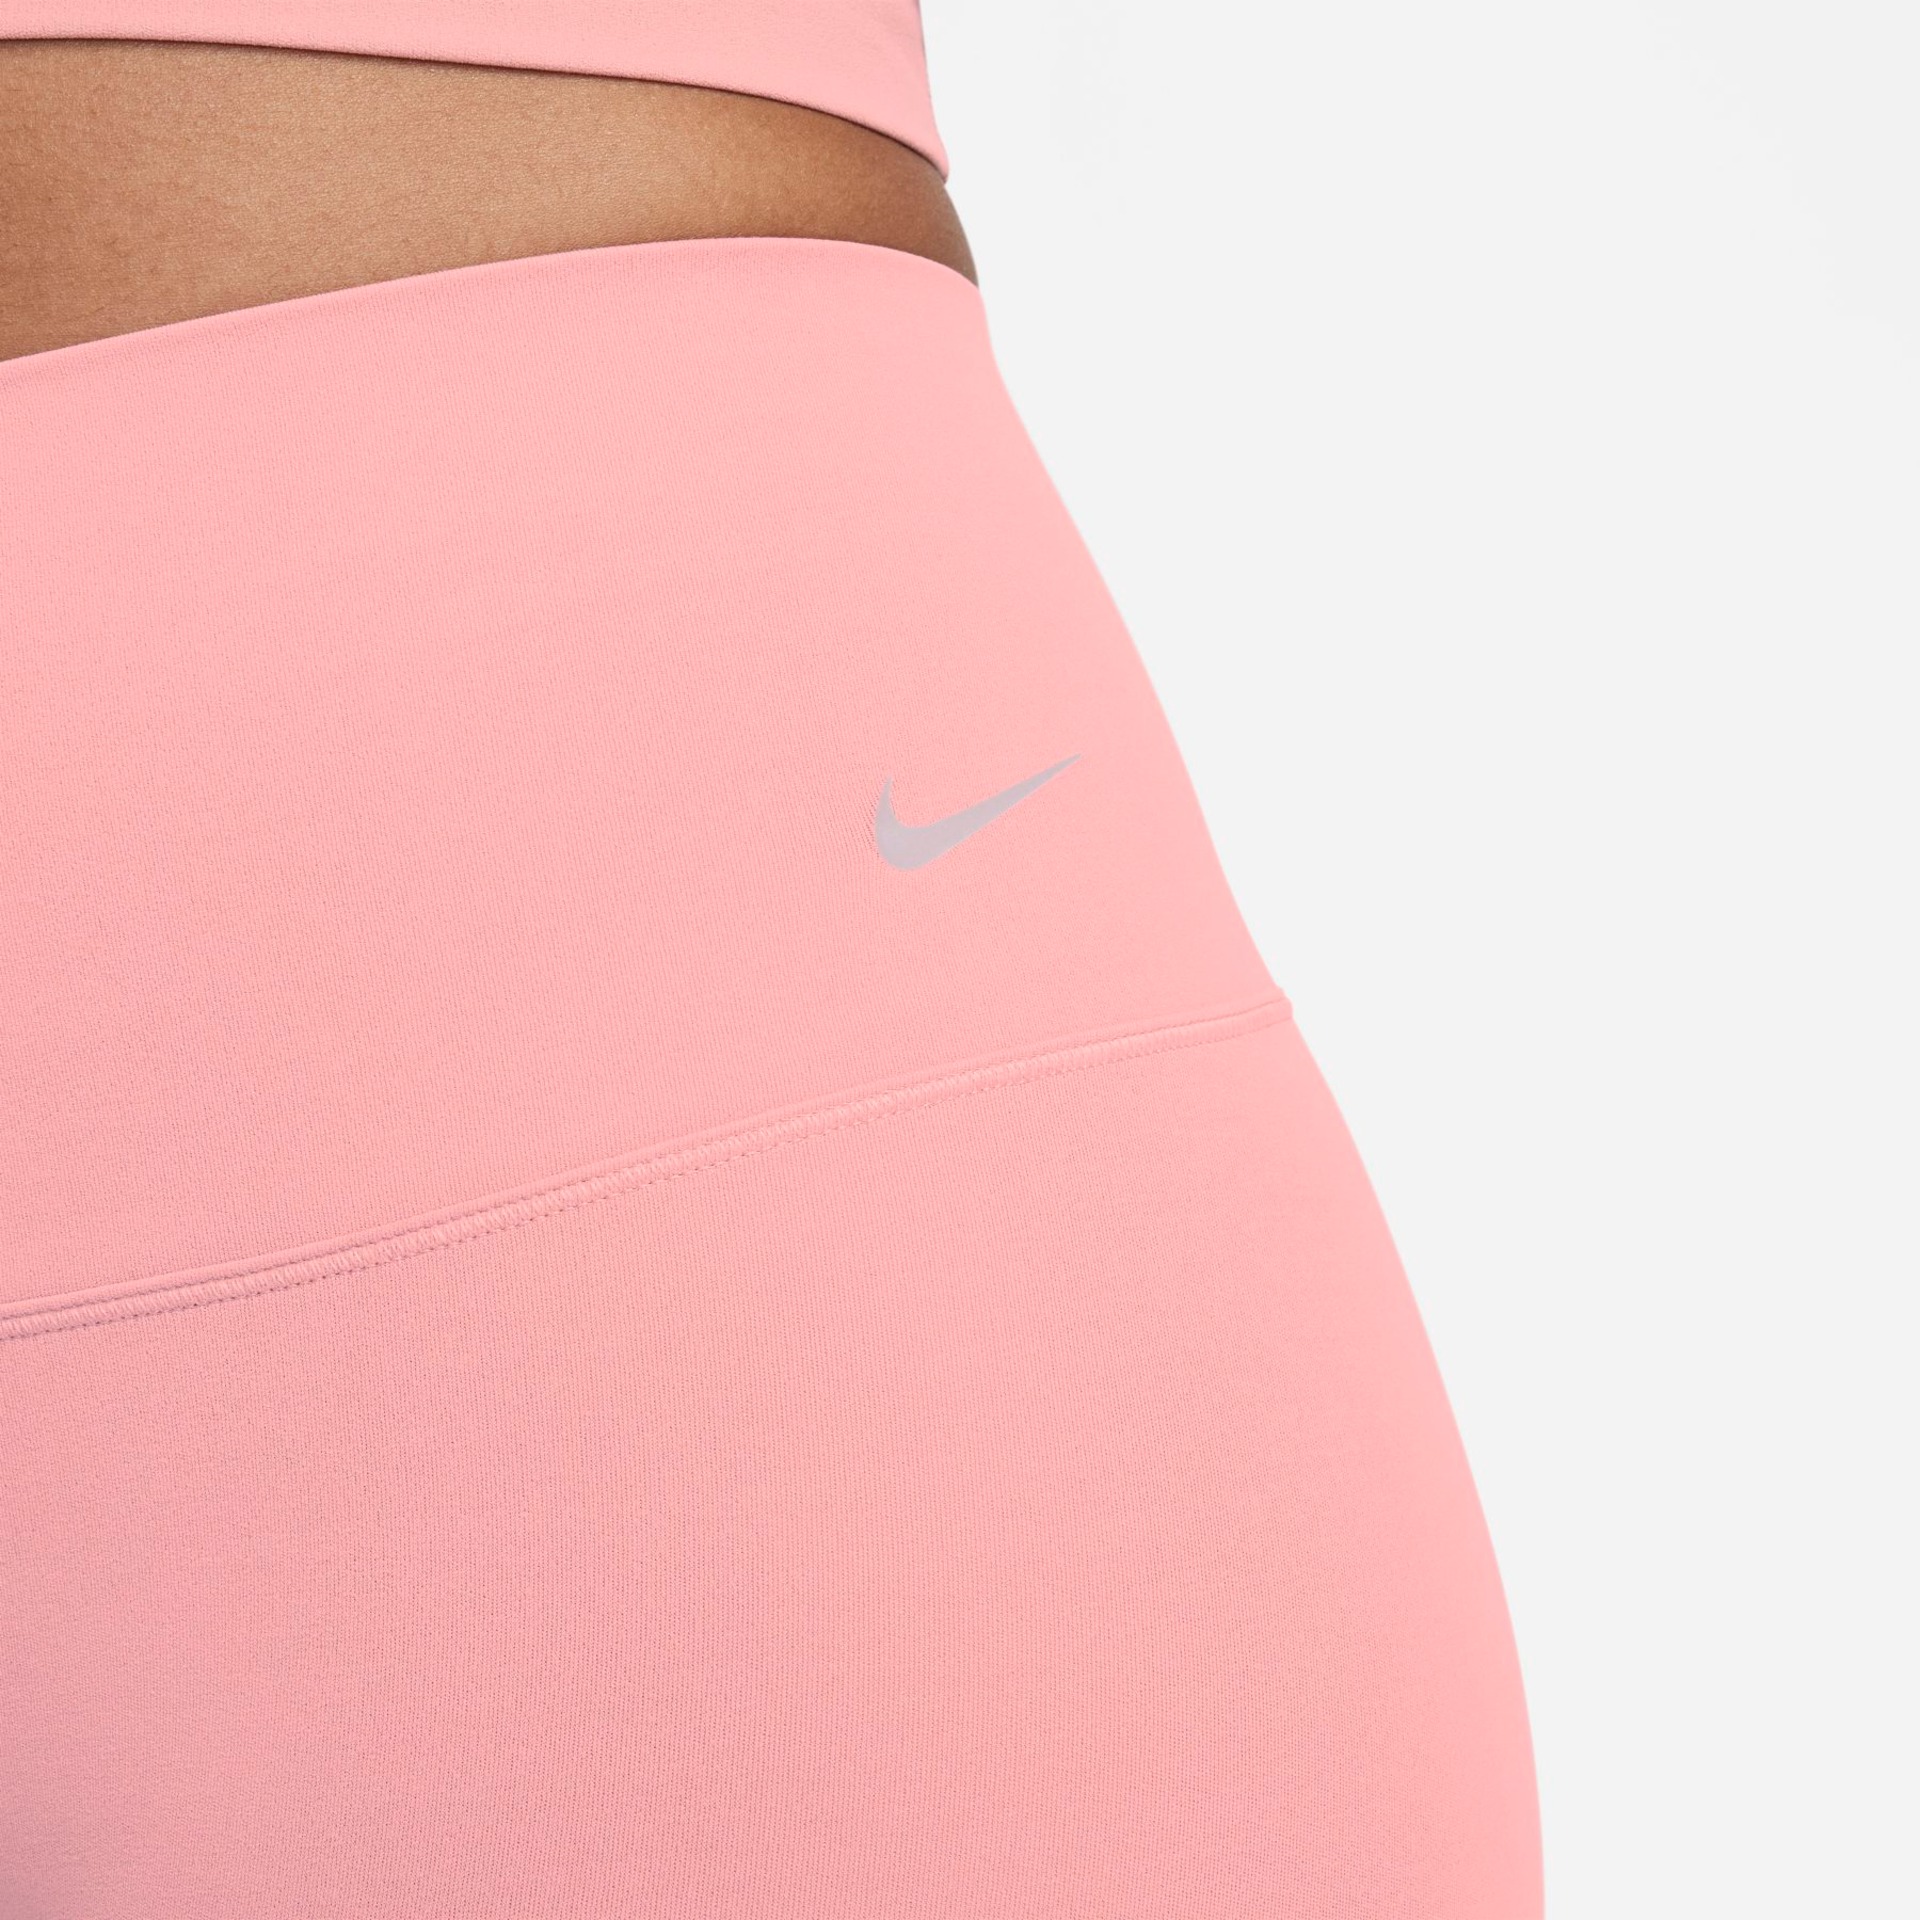 Shorts Nike Zenvy Feminino - Foto 5